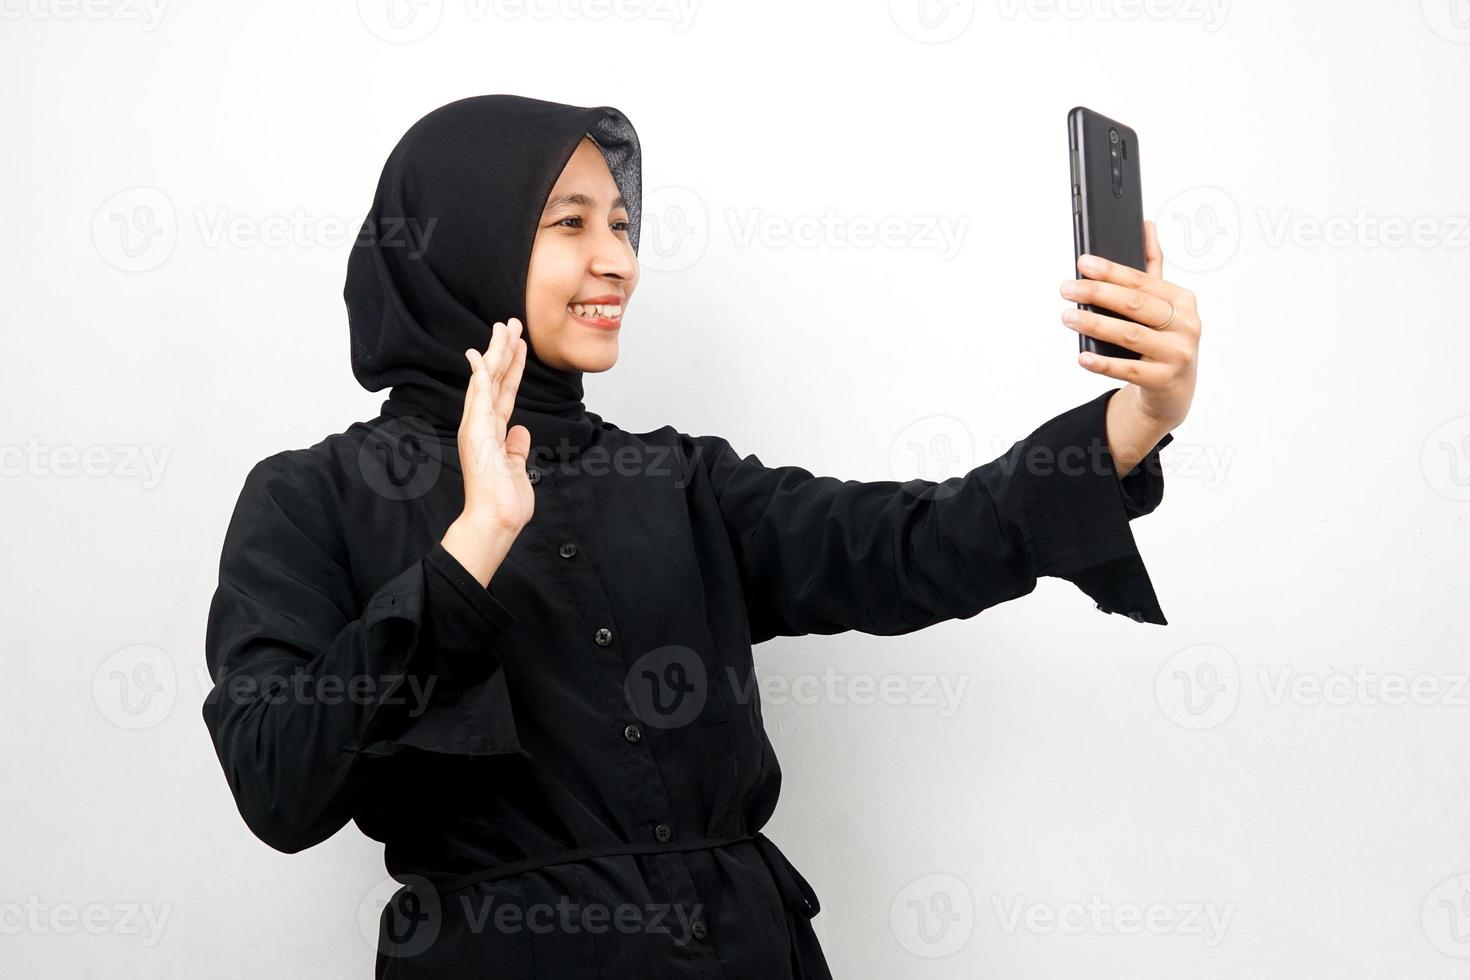 belle jeune femme musulmane asiatique avec les mains tenant un smartphone, appeler quelqu'un, faire un appel vidéo, prendre un selfie, souriant confiant, enthousiaste et joyeux isolé sur fond blanc photo